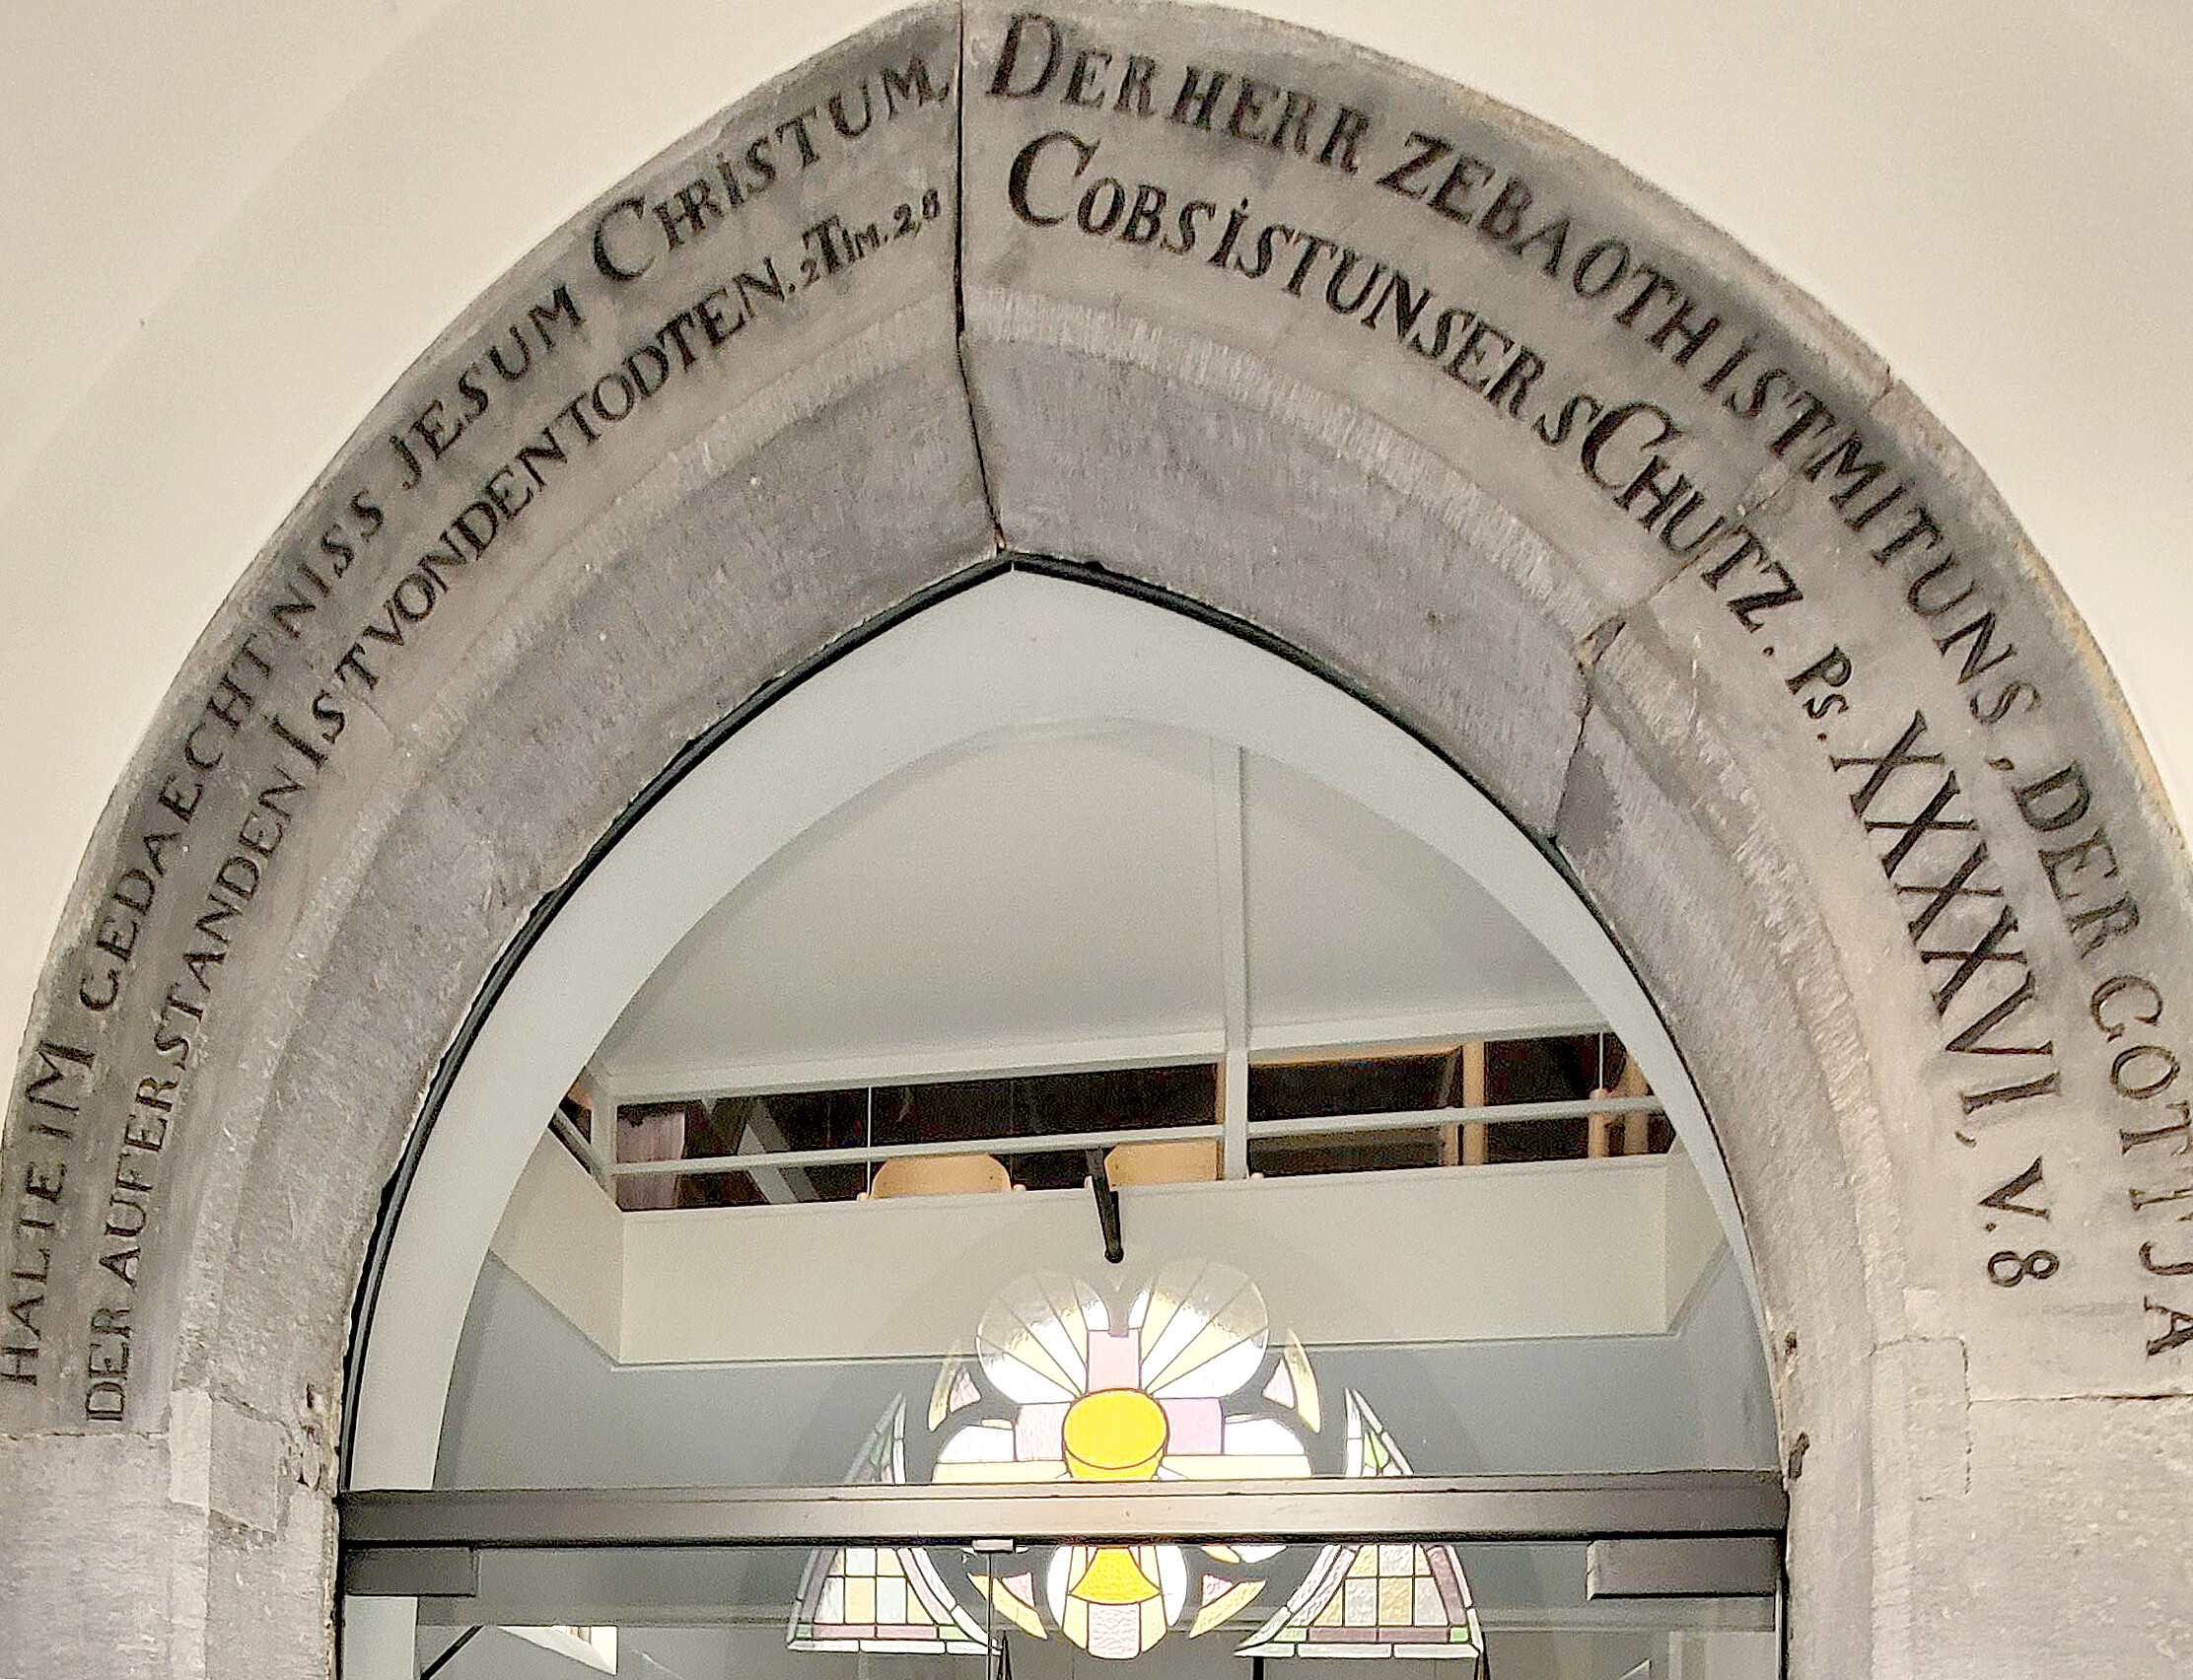 "Halte im Gedaechtniss Jesum Christum" steht über dem Eingangsportal der Kirche.